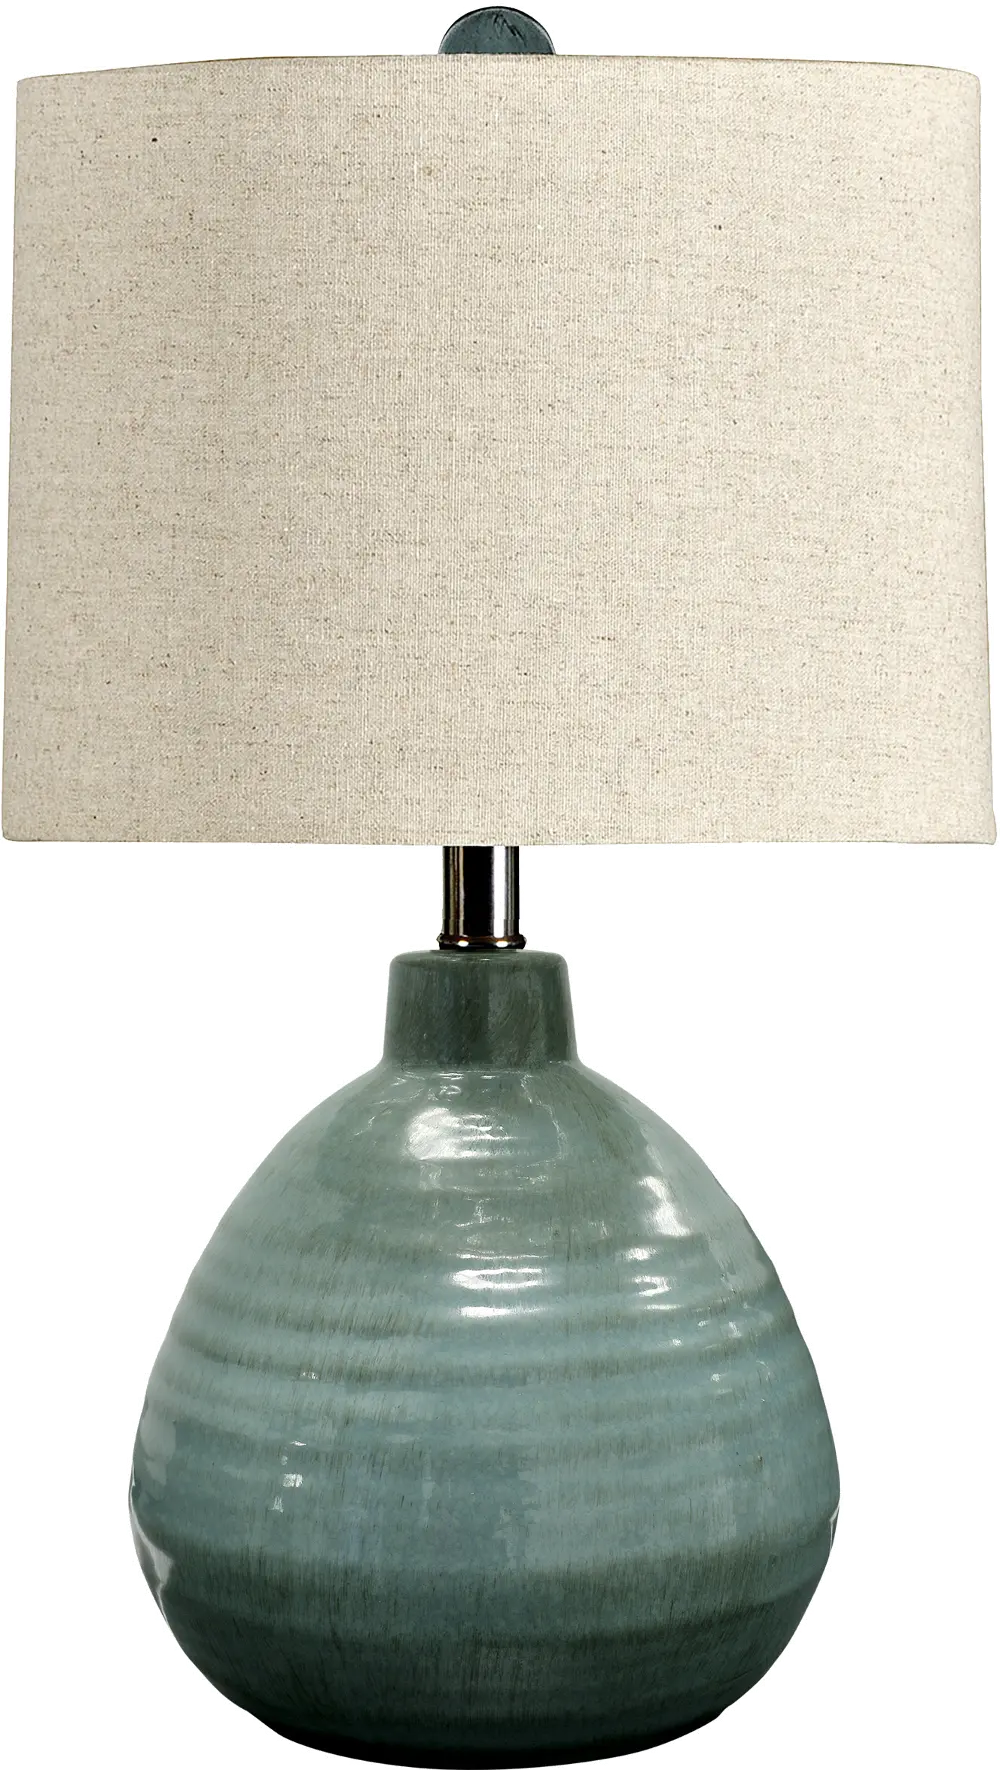 Turquoise Ceramic Table Lamp-1